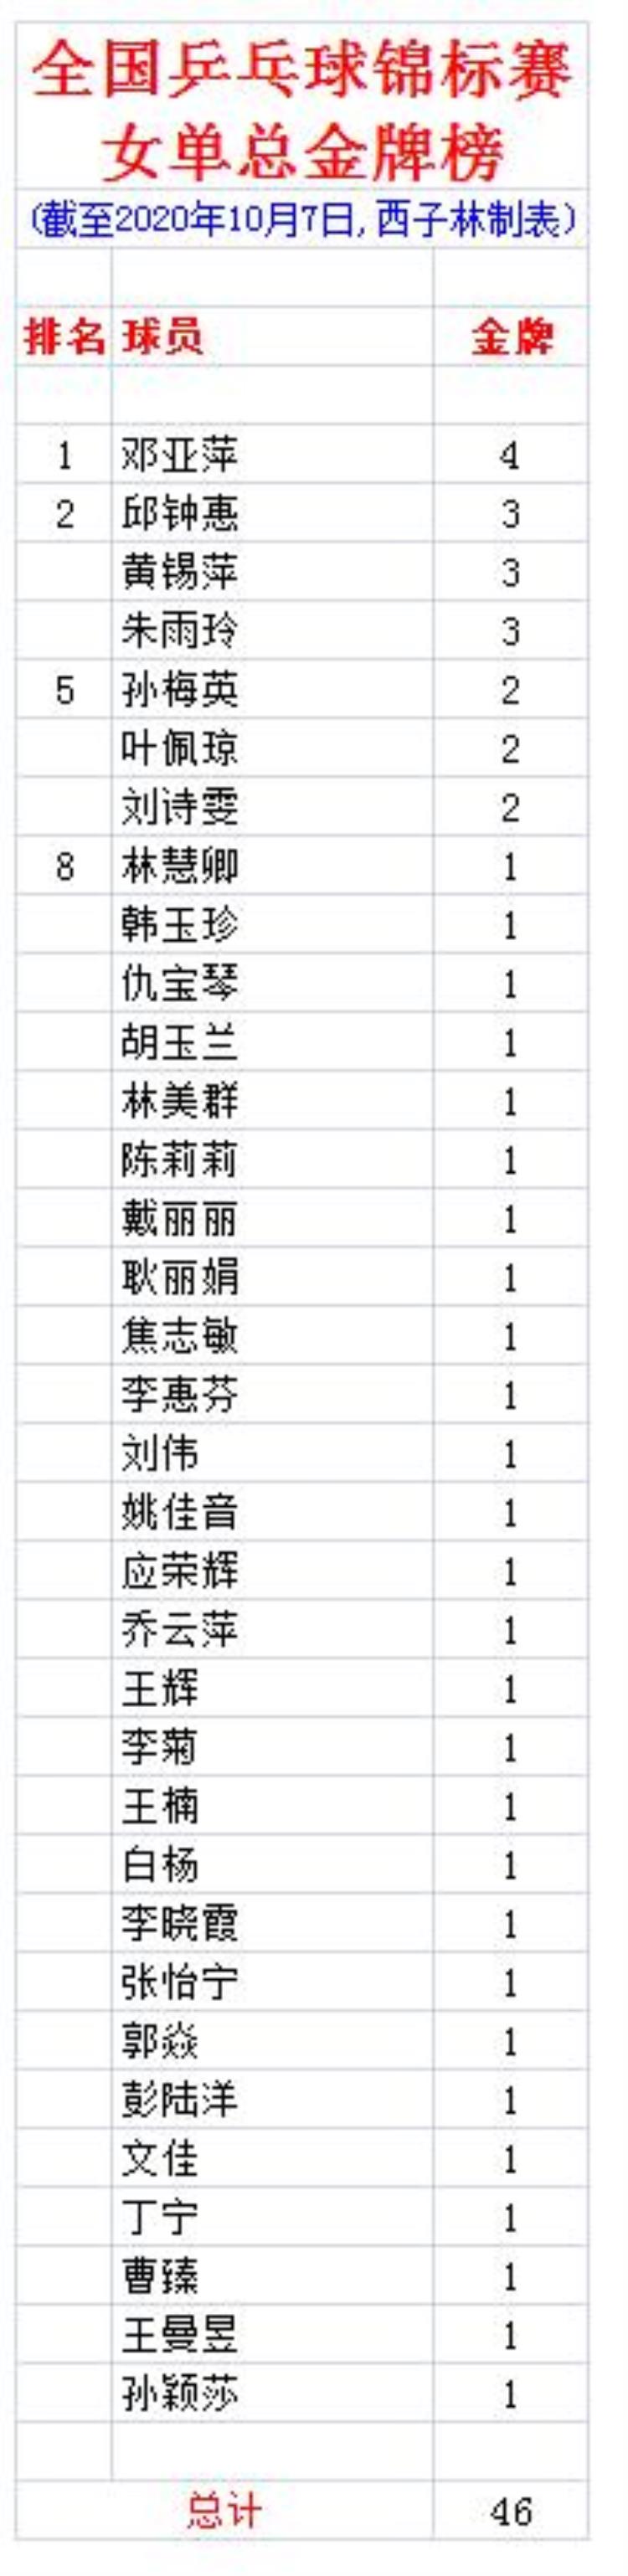 全国乒乓球锦标赛女单总金牌榜邓亚萍4金刘诗雯2冠